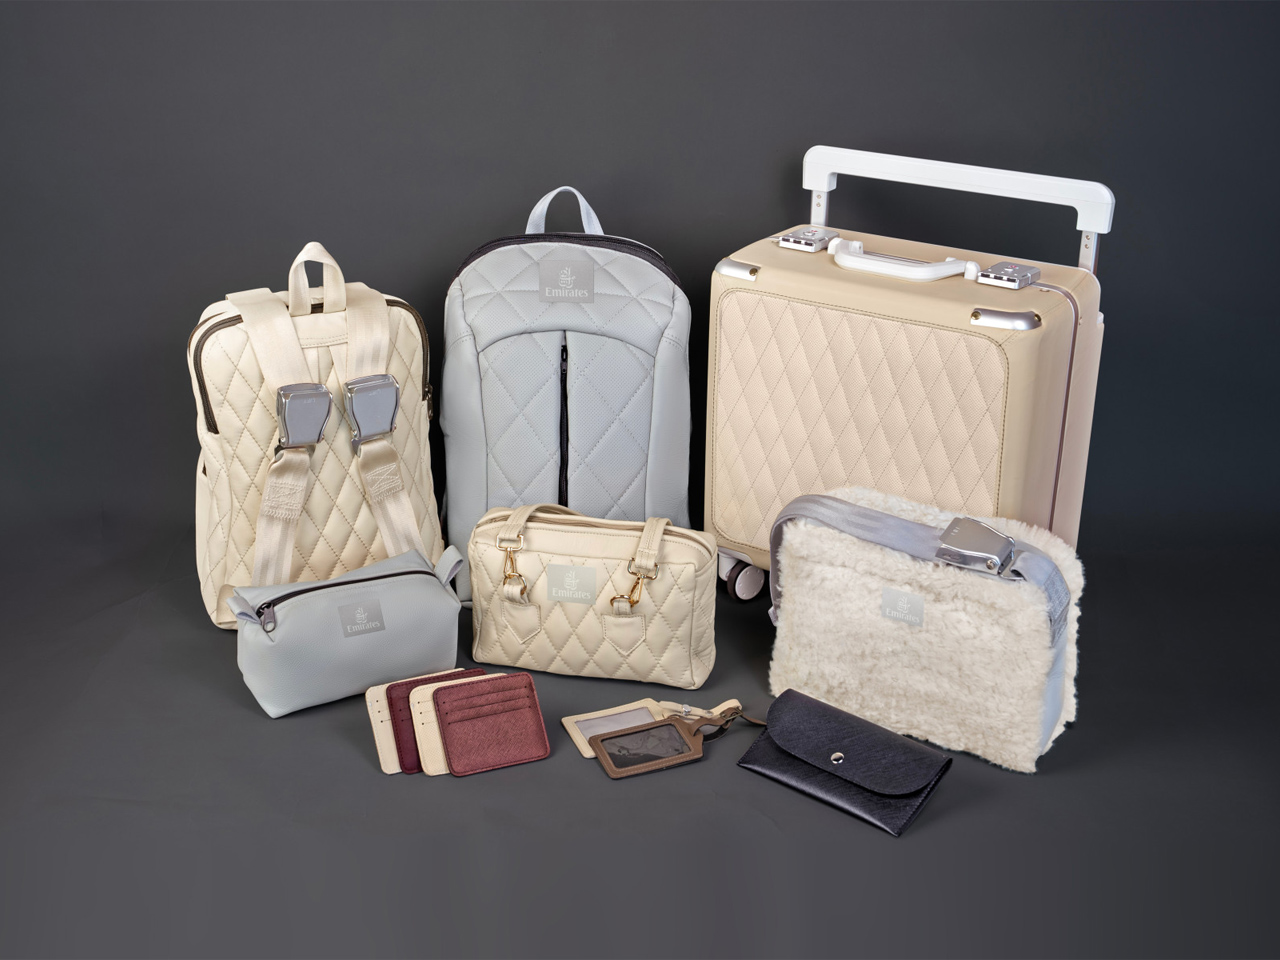 Авиакомпания Emirates выпустила уникальную капсульную коллекцию багажа, сумок и аксессуаров